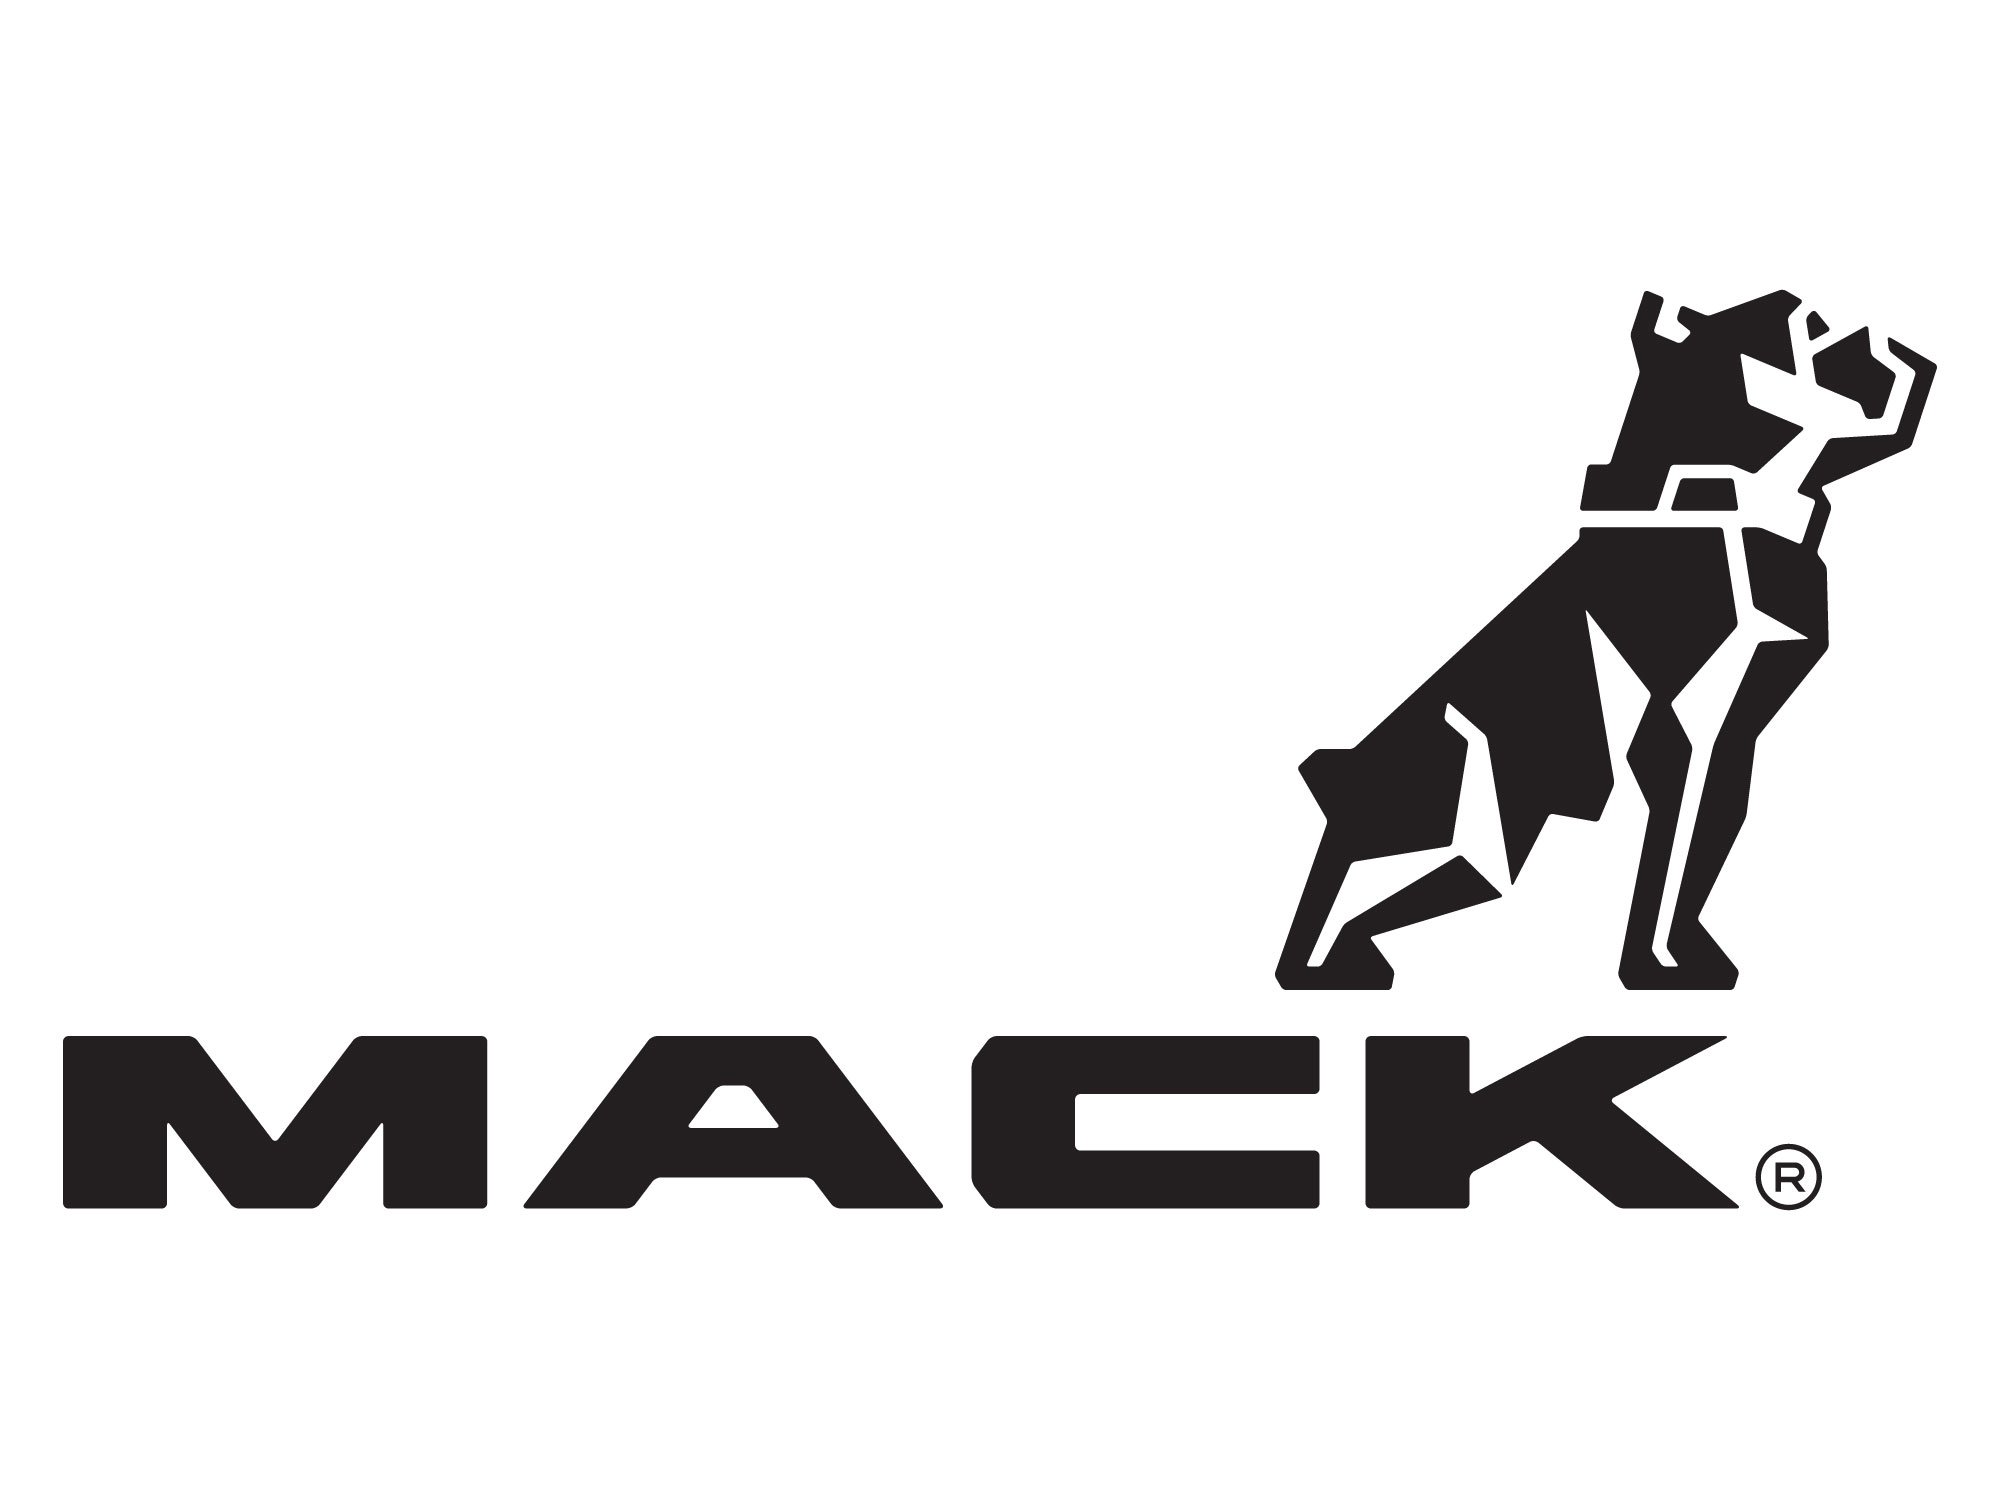 Mack.and.ronni mega